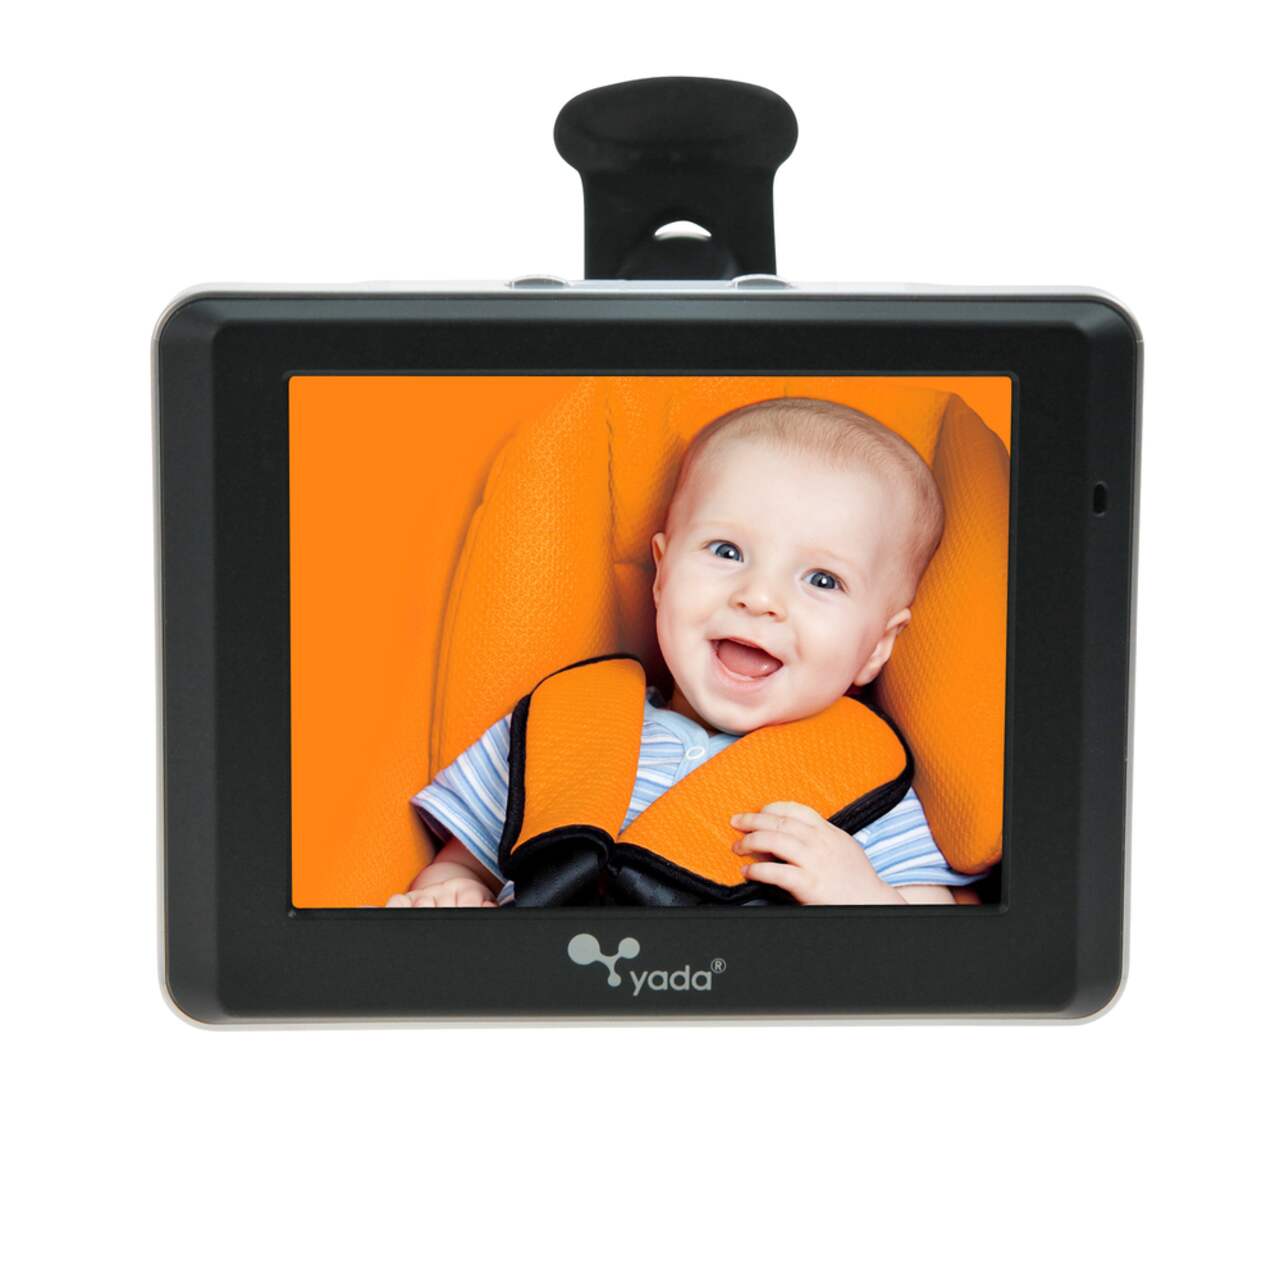 5 meilleures caméras de voiture pour bébé pour surveiller vos enfants -  Moyens I/O